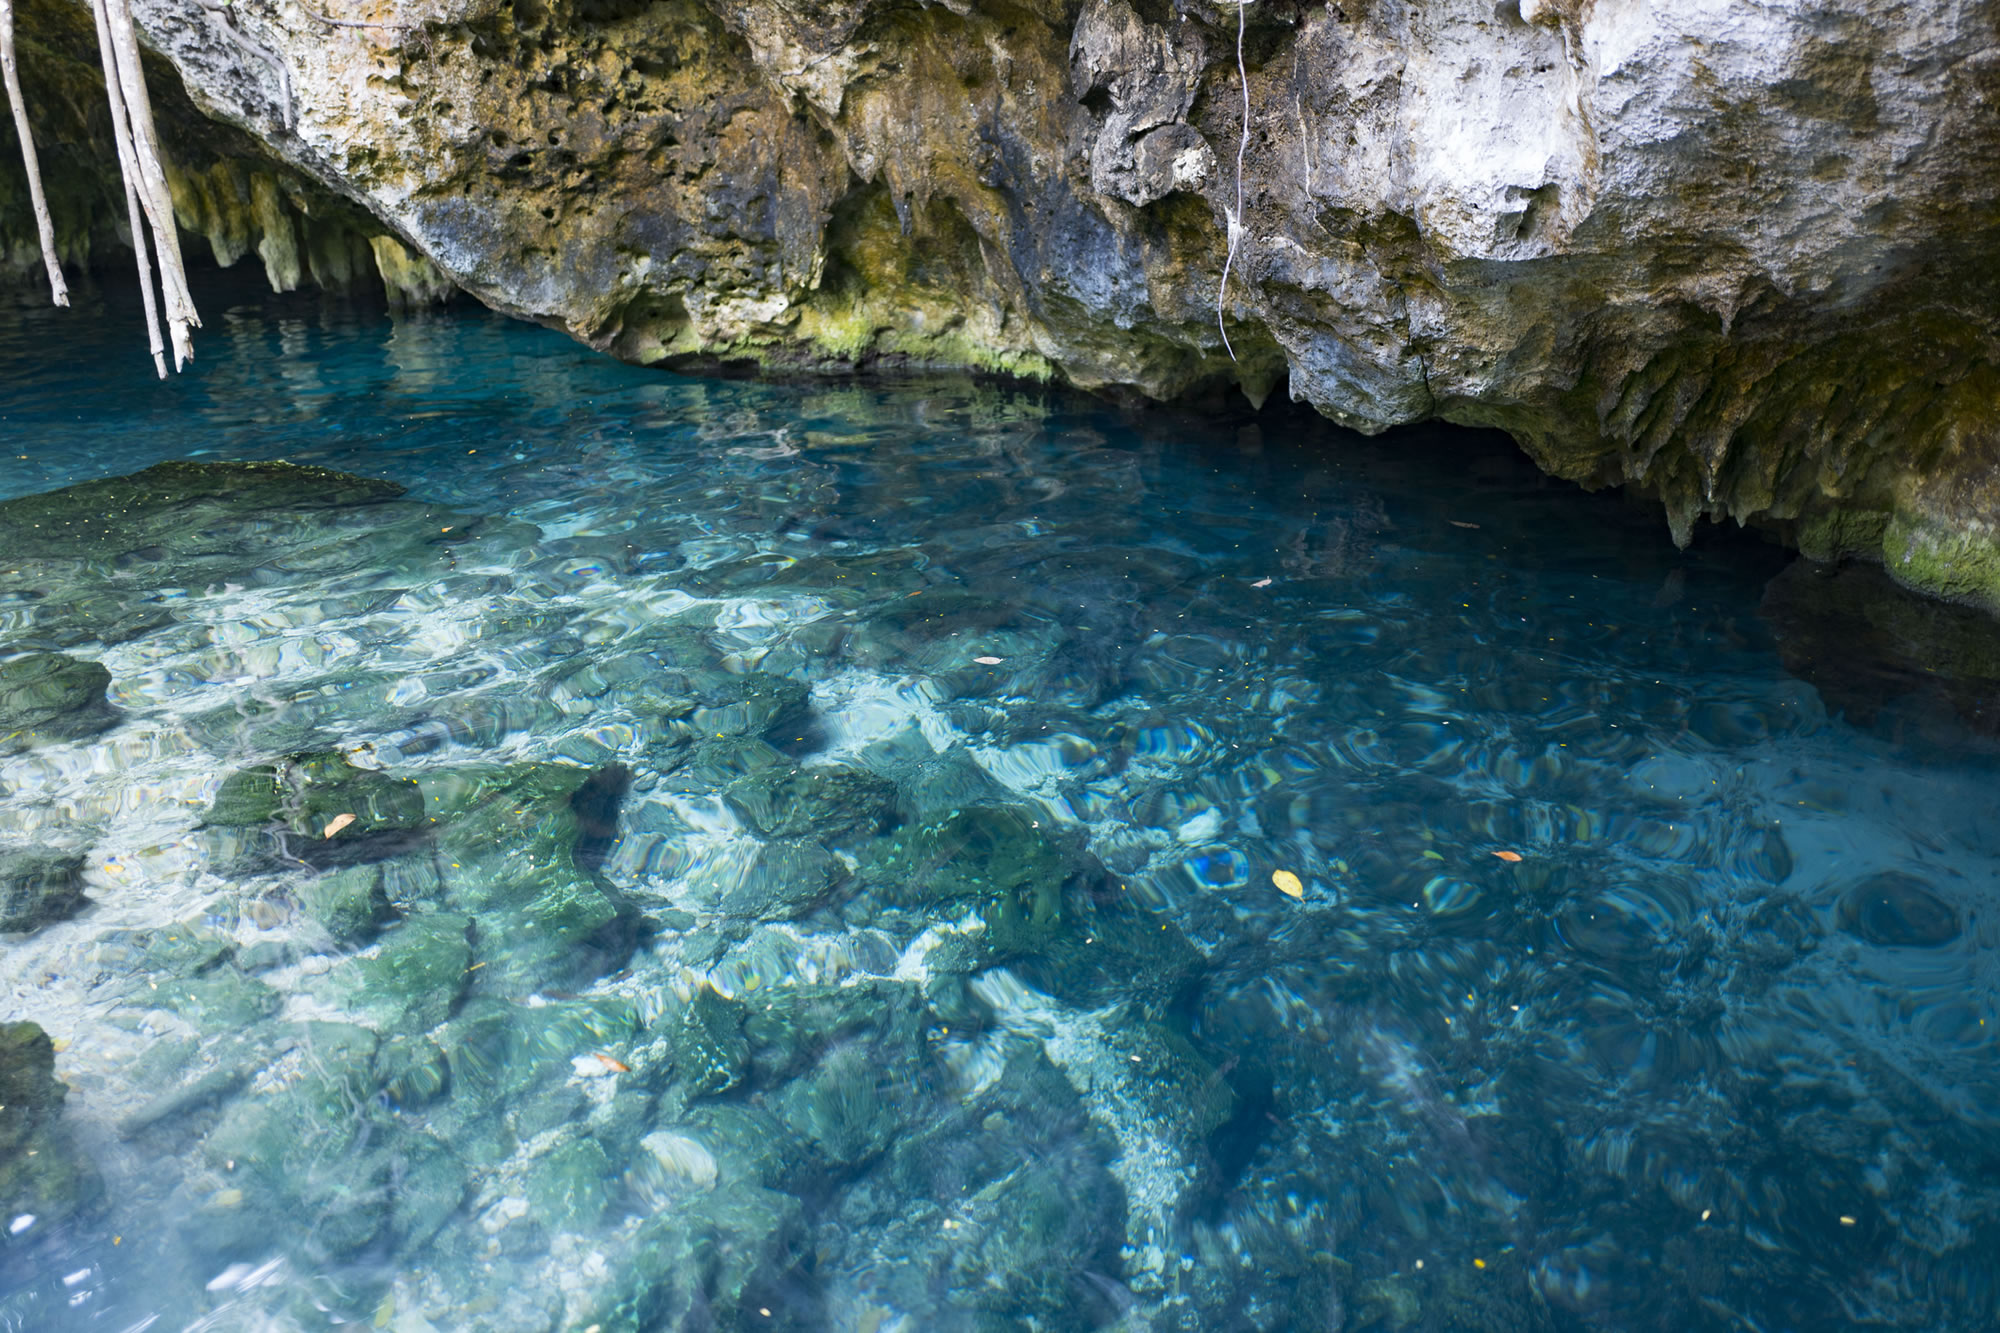 Go Swimming in a Cenote